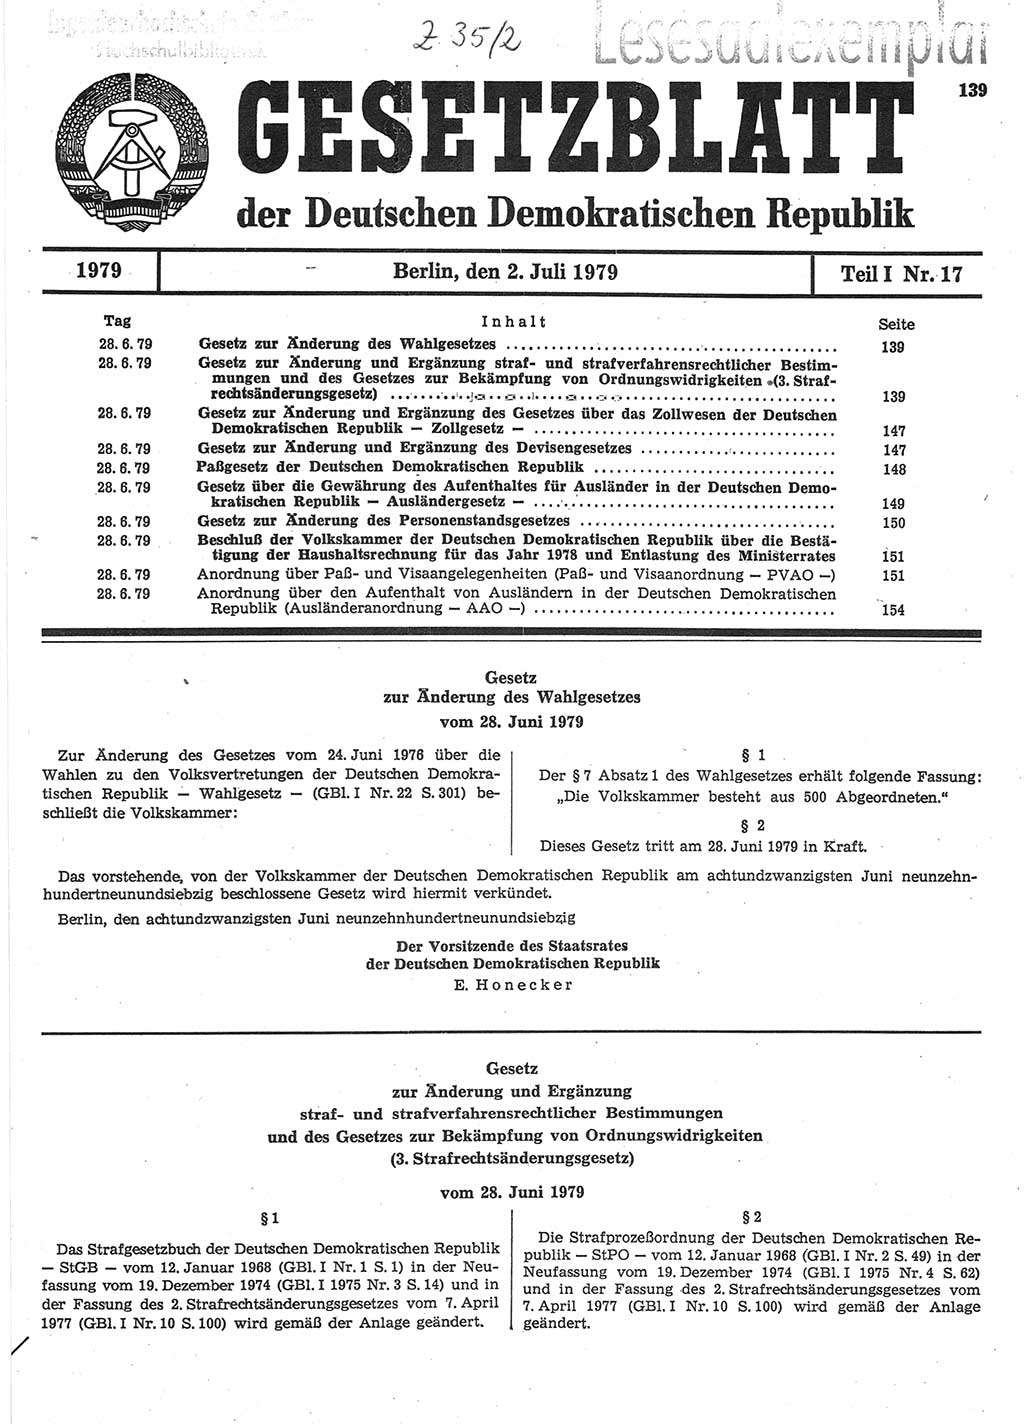 Gesetzblatt (GBl.) der Deutschen Demokratischen Republik (DDR) Teil Ⅰ 1979, Seite 139 (GBl. DDR Ⅰ 1979, S. 139)